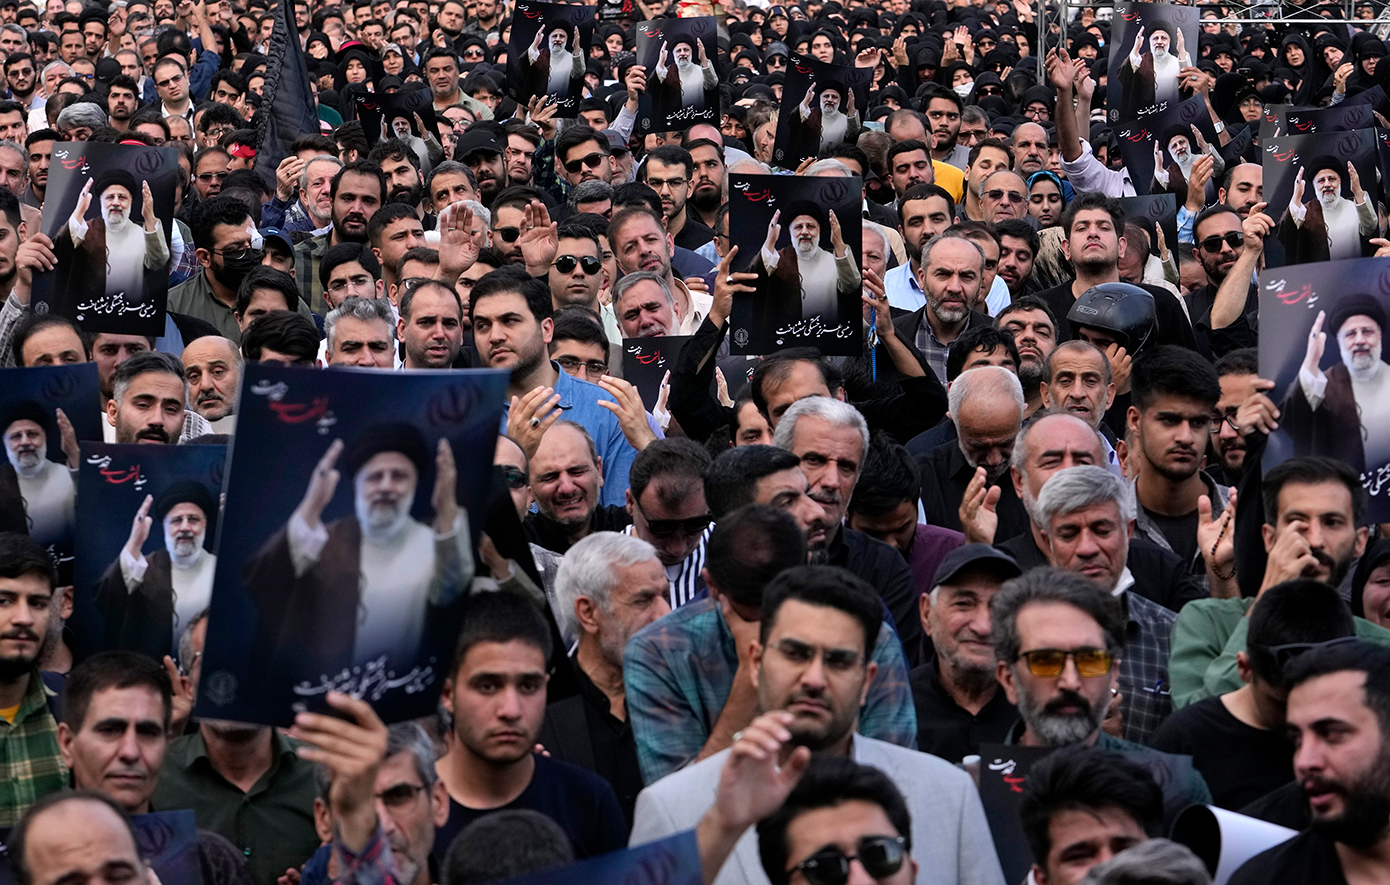 Πώς αντέδρασαν οι Ιρανοί στην είδηση του θανάτου του προέδρου, Εμπραχίμ Ραϊσί – Ο θρήνος και οι πανηγυρισμοί